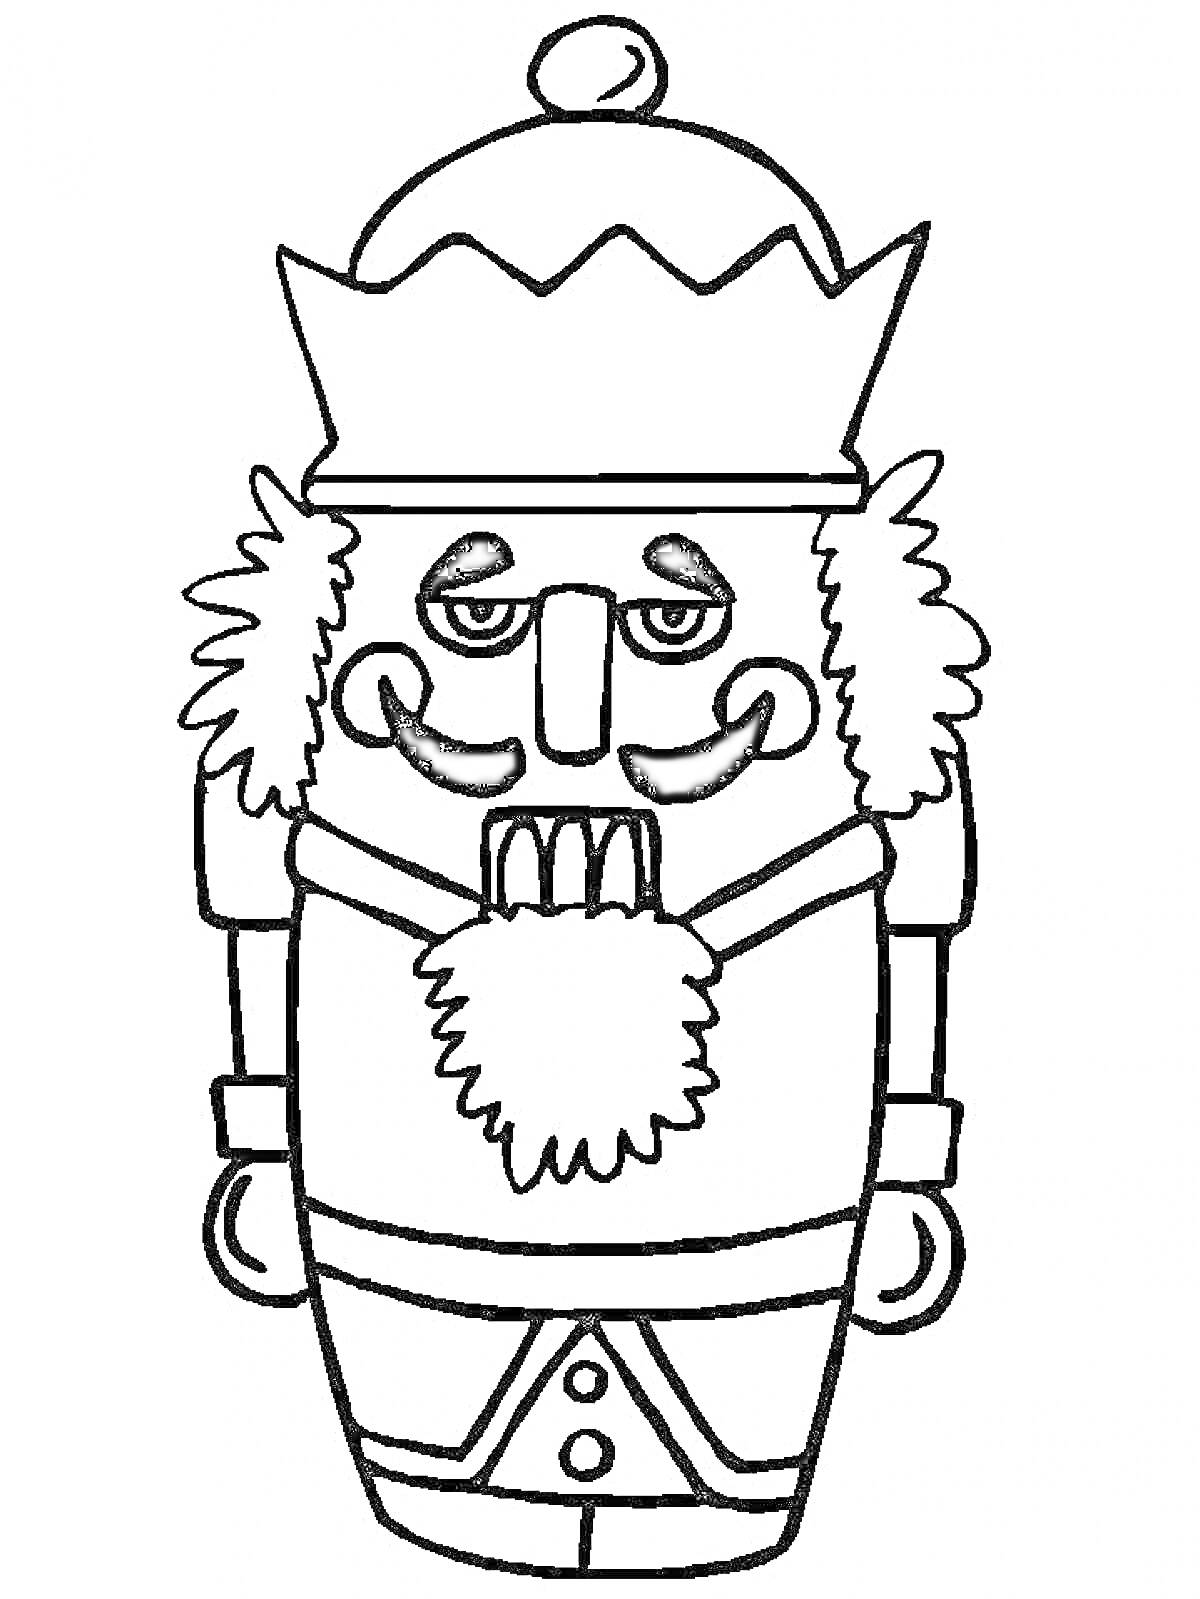 Щелкунчик в короне и с бородой